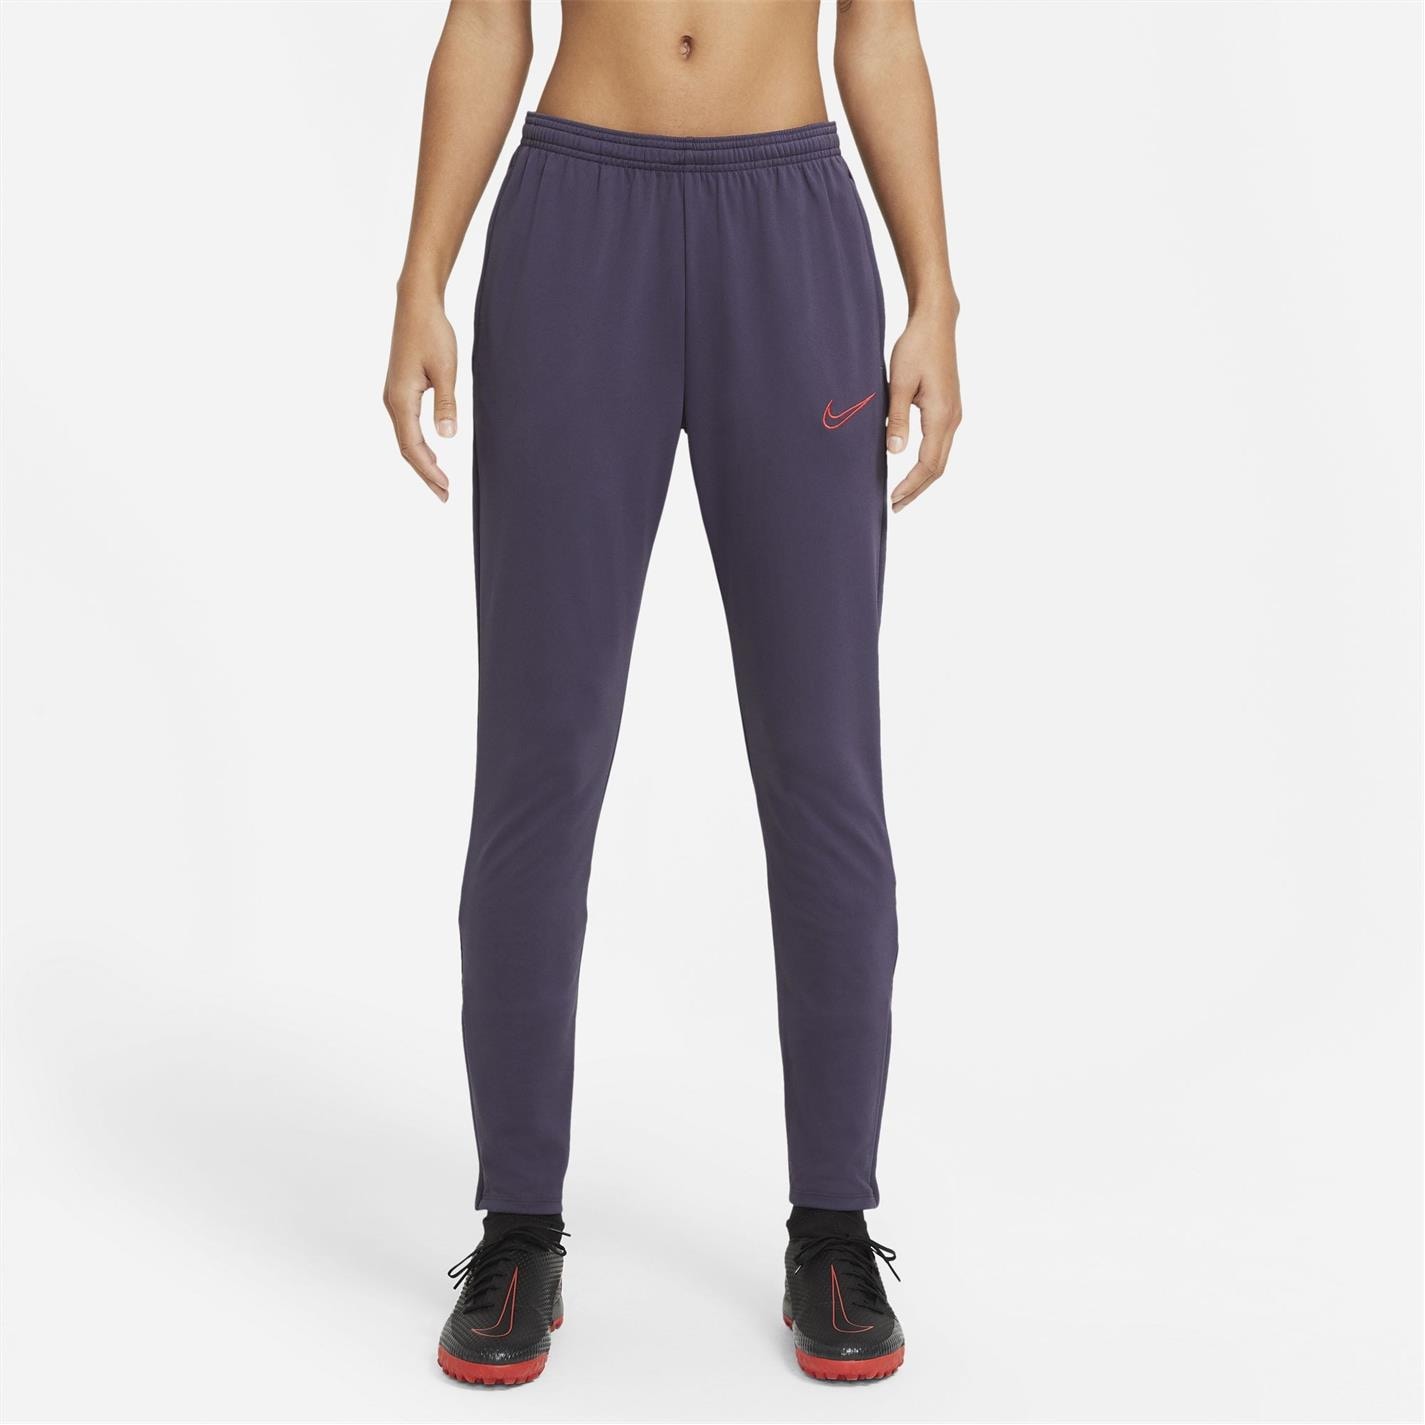 Pantaloni Nike Academy Soccer pentru femei prpl rosu